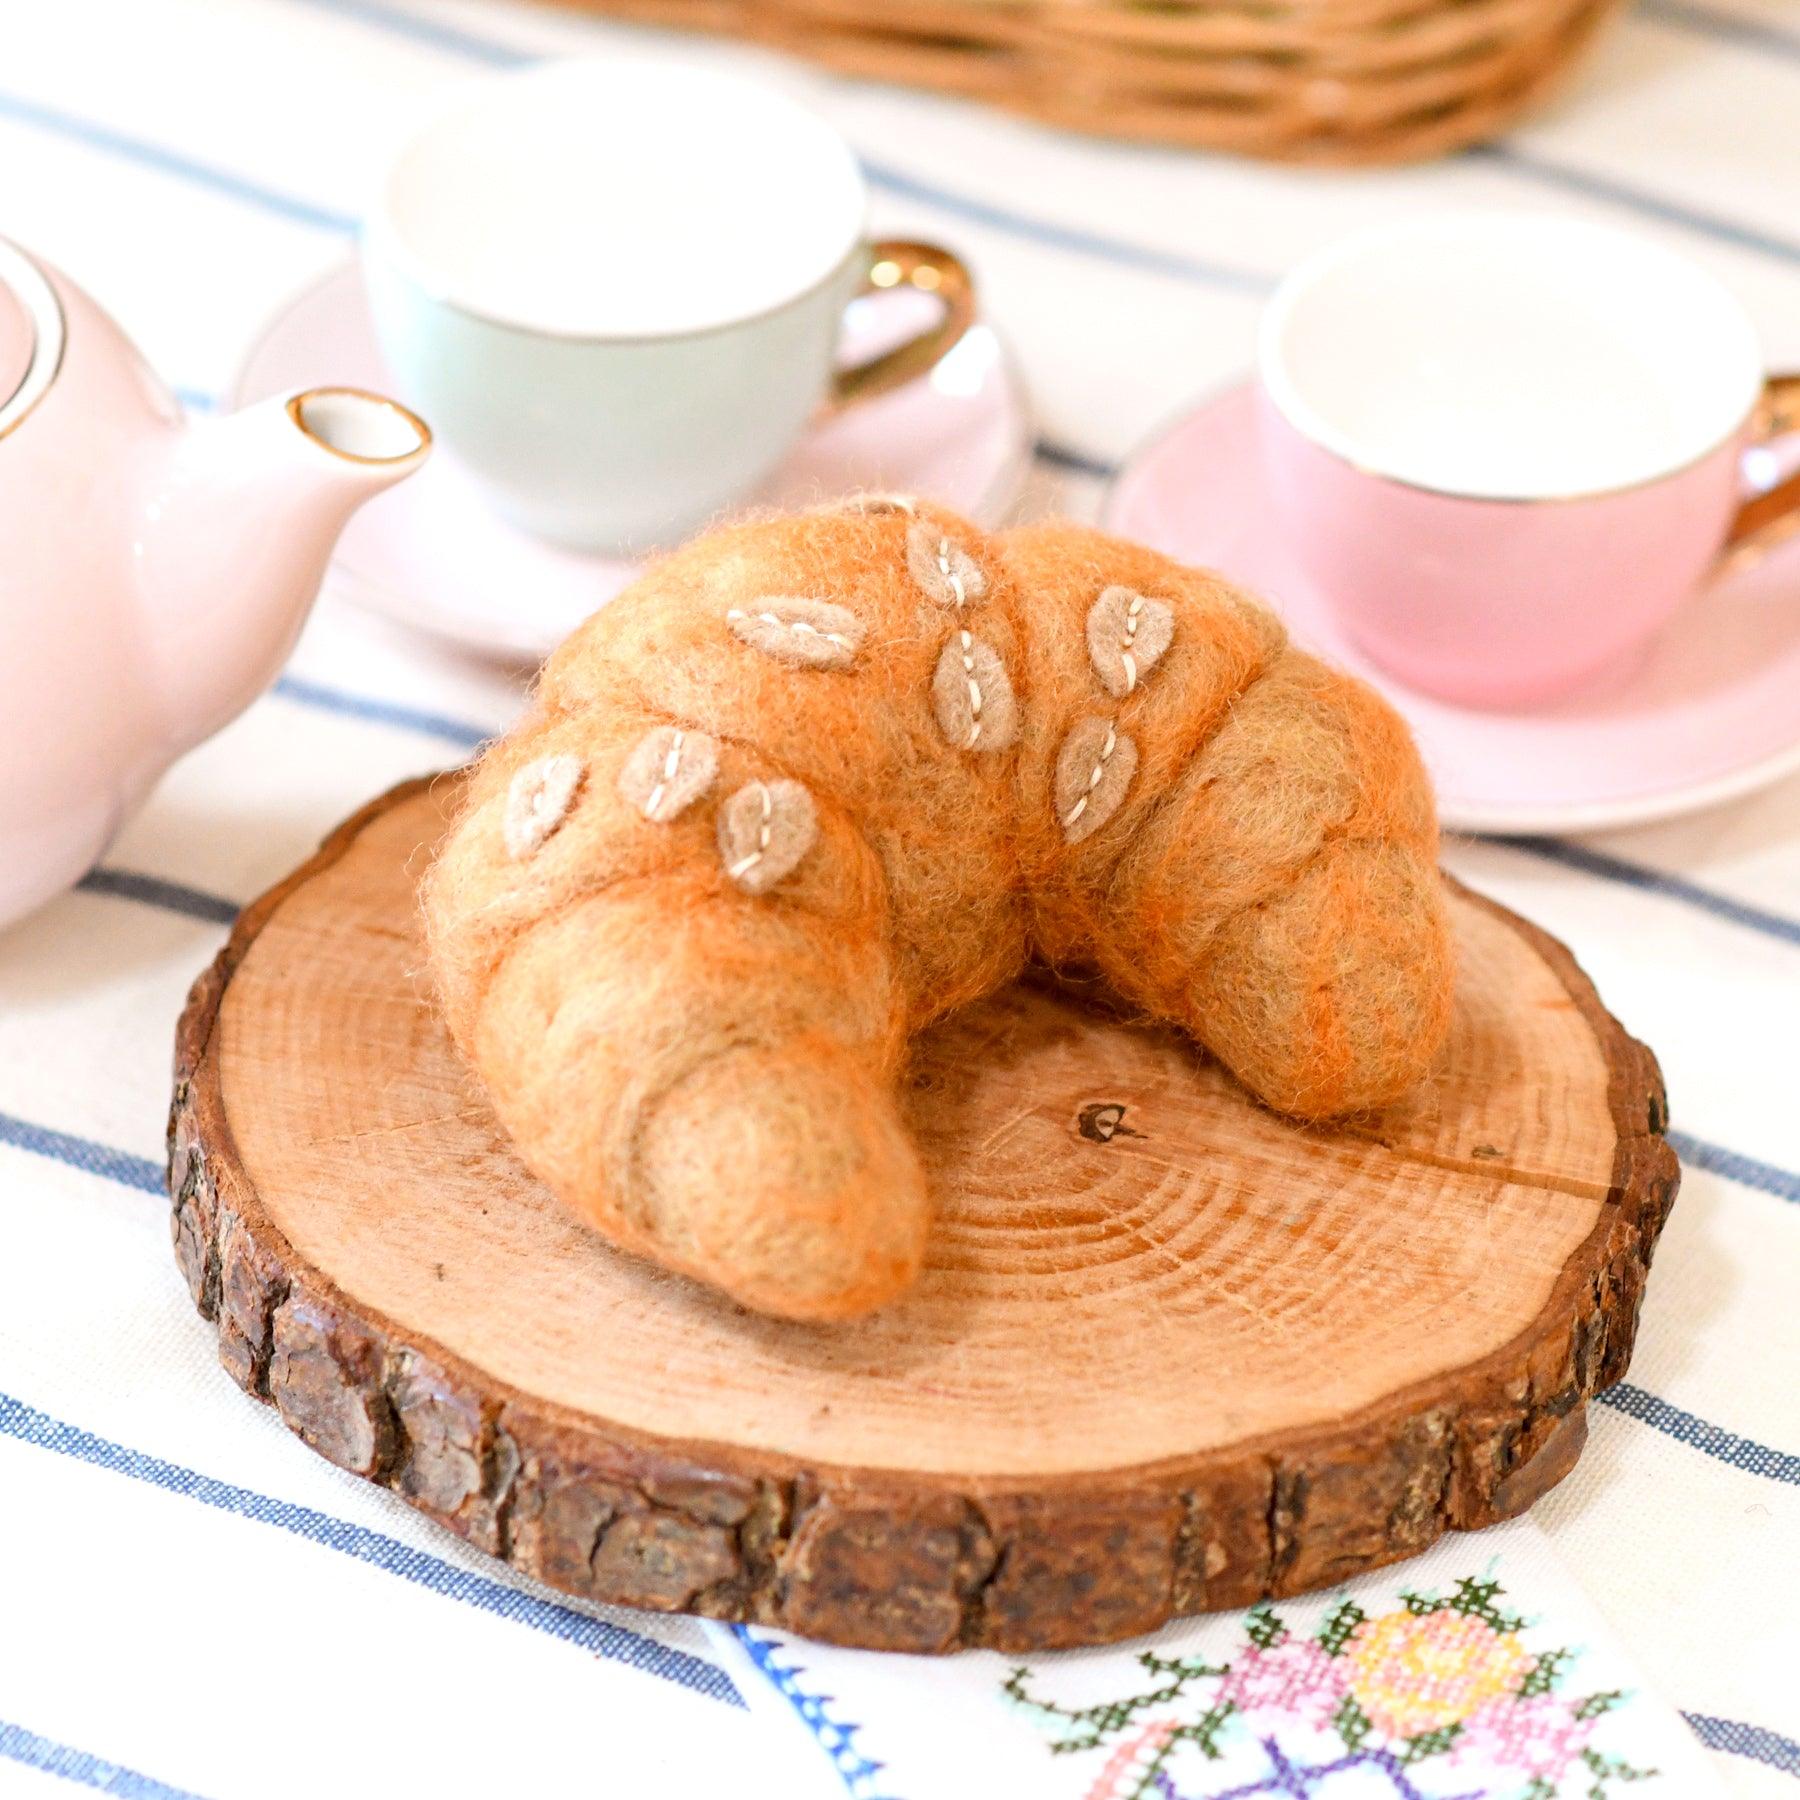 Felt Almond Croissant - Tara Treasures